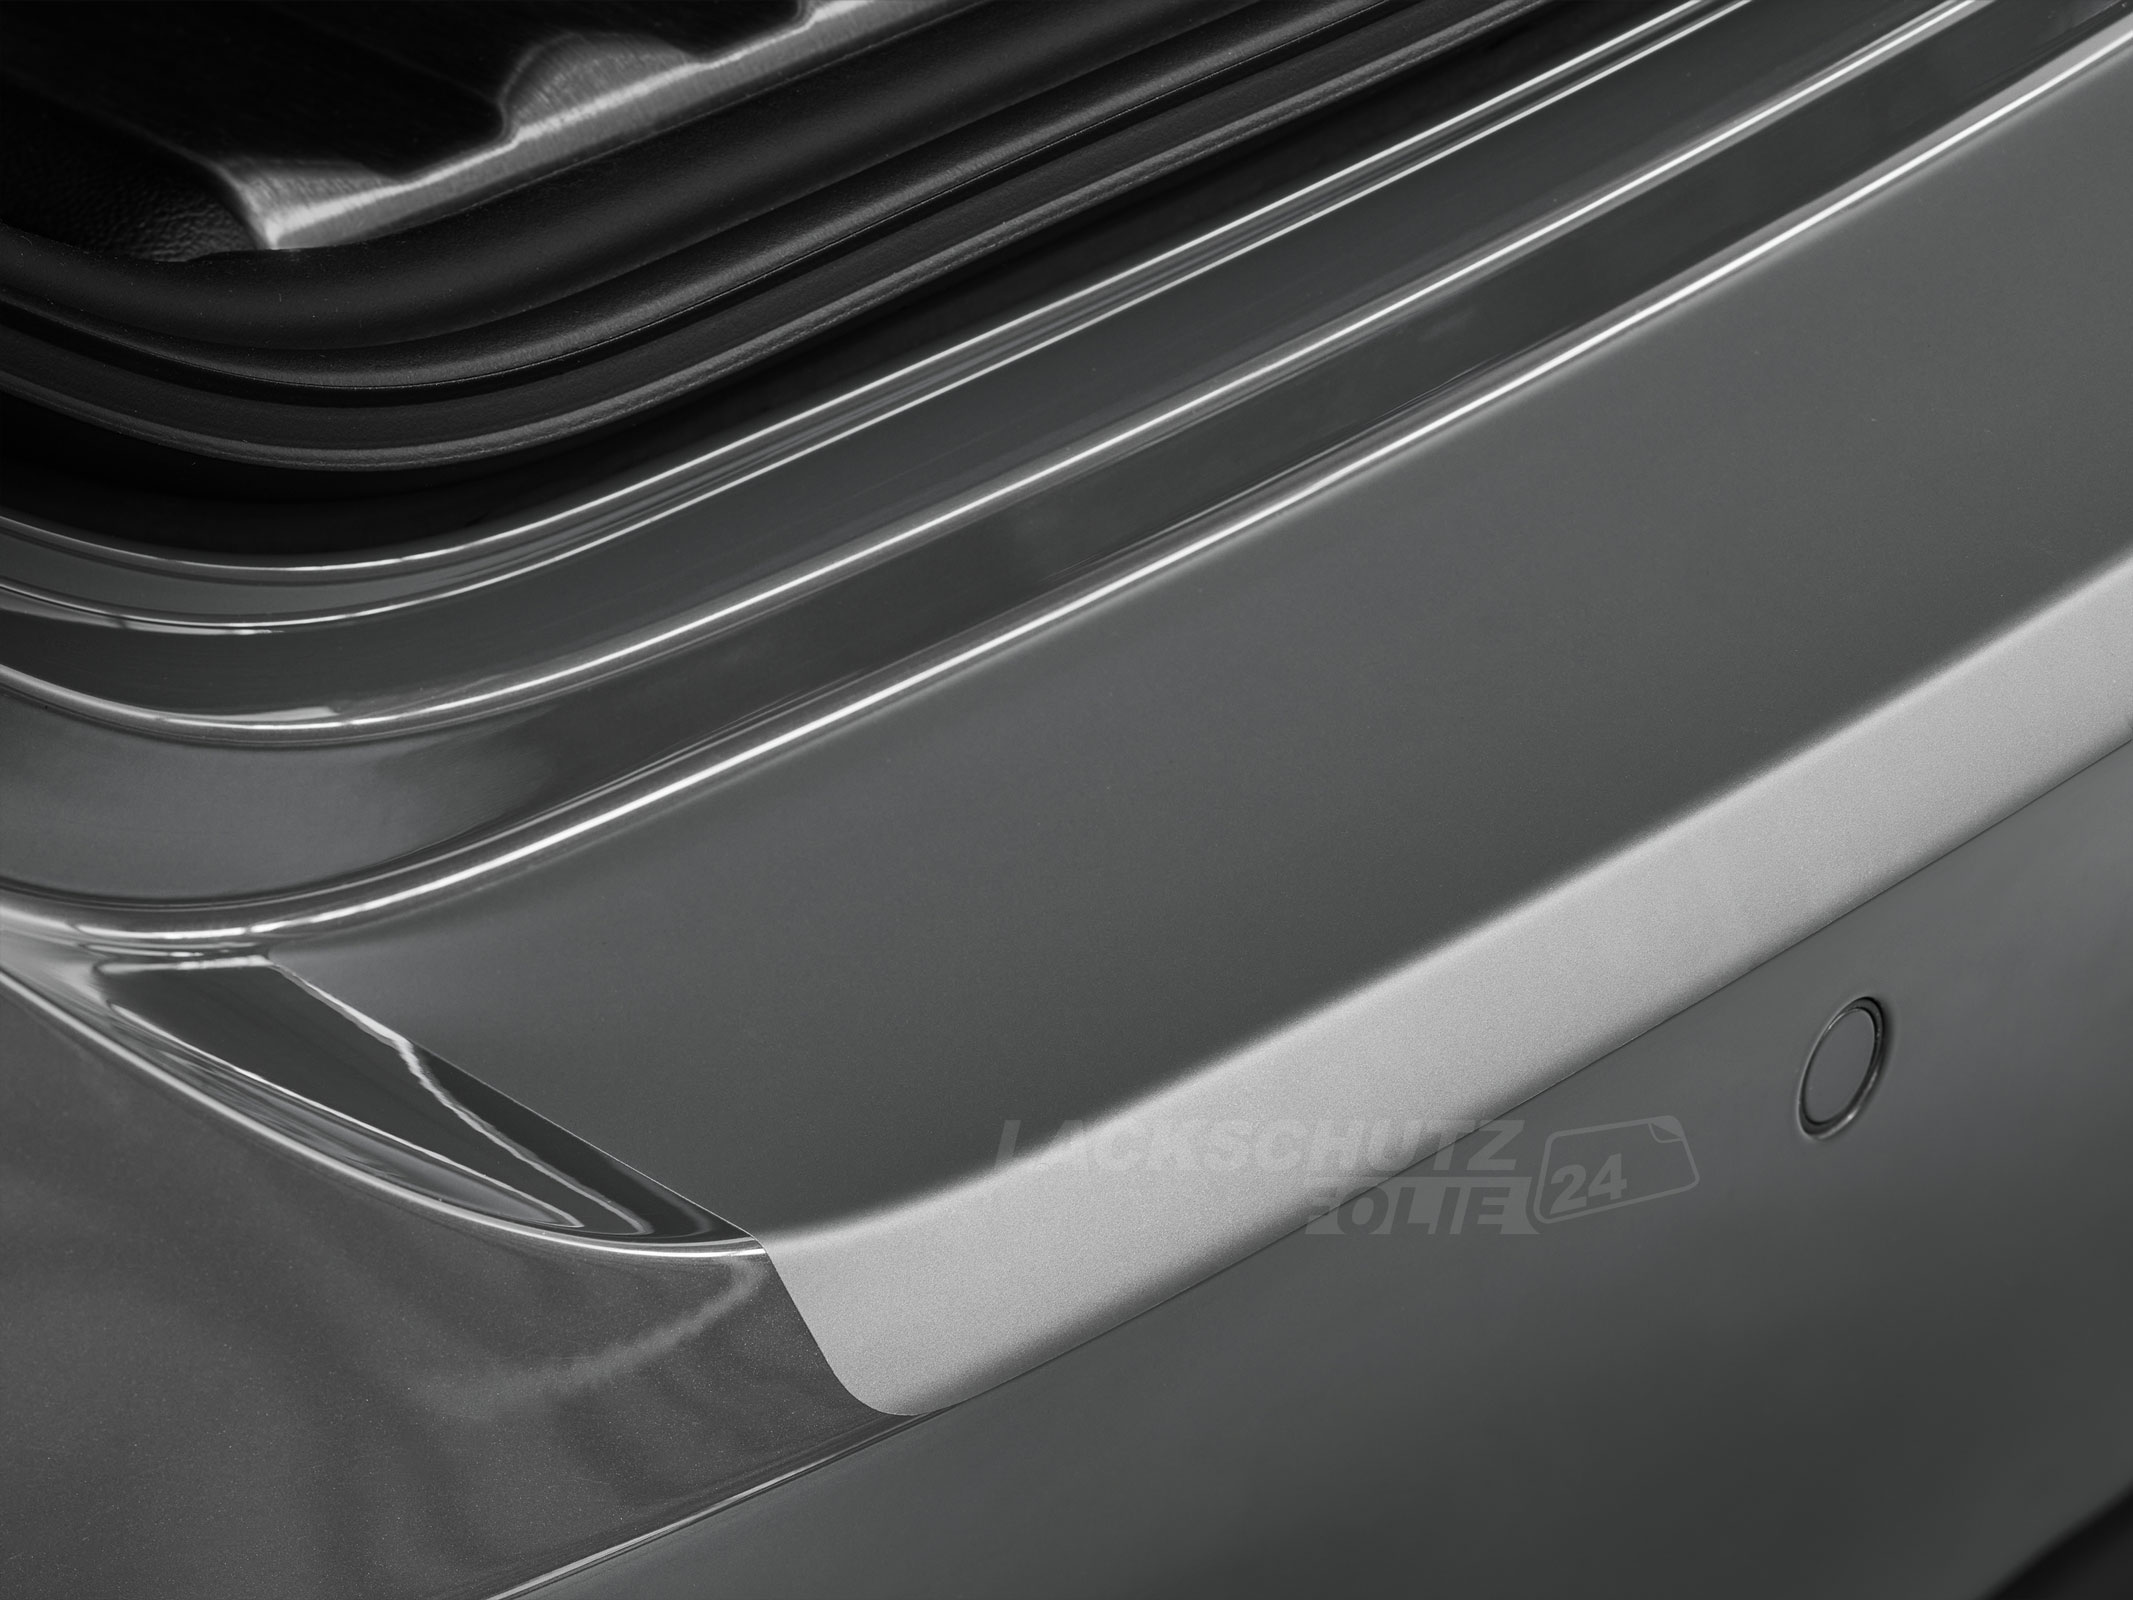 Ladekantenschutzfolie - Transparent Glatt MATT für Audi A1 Sportback Typ 8X, BJ 02/2012-07/2018